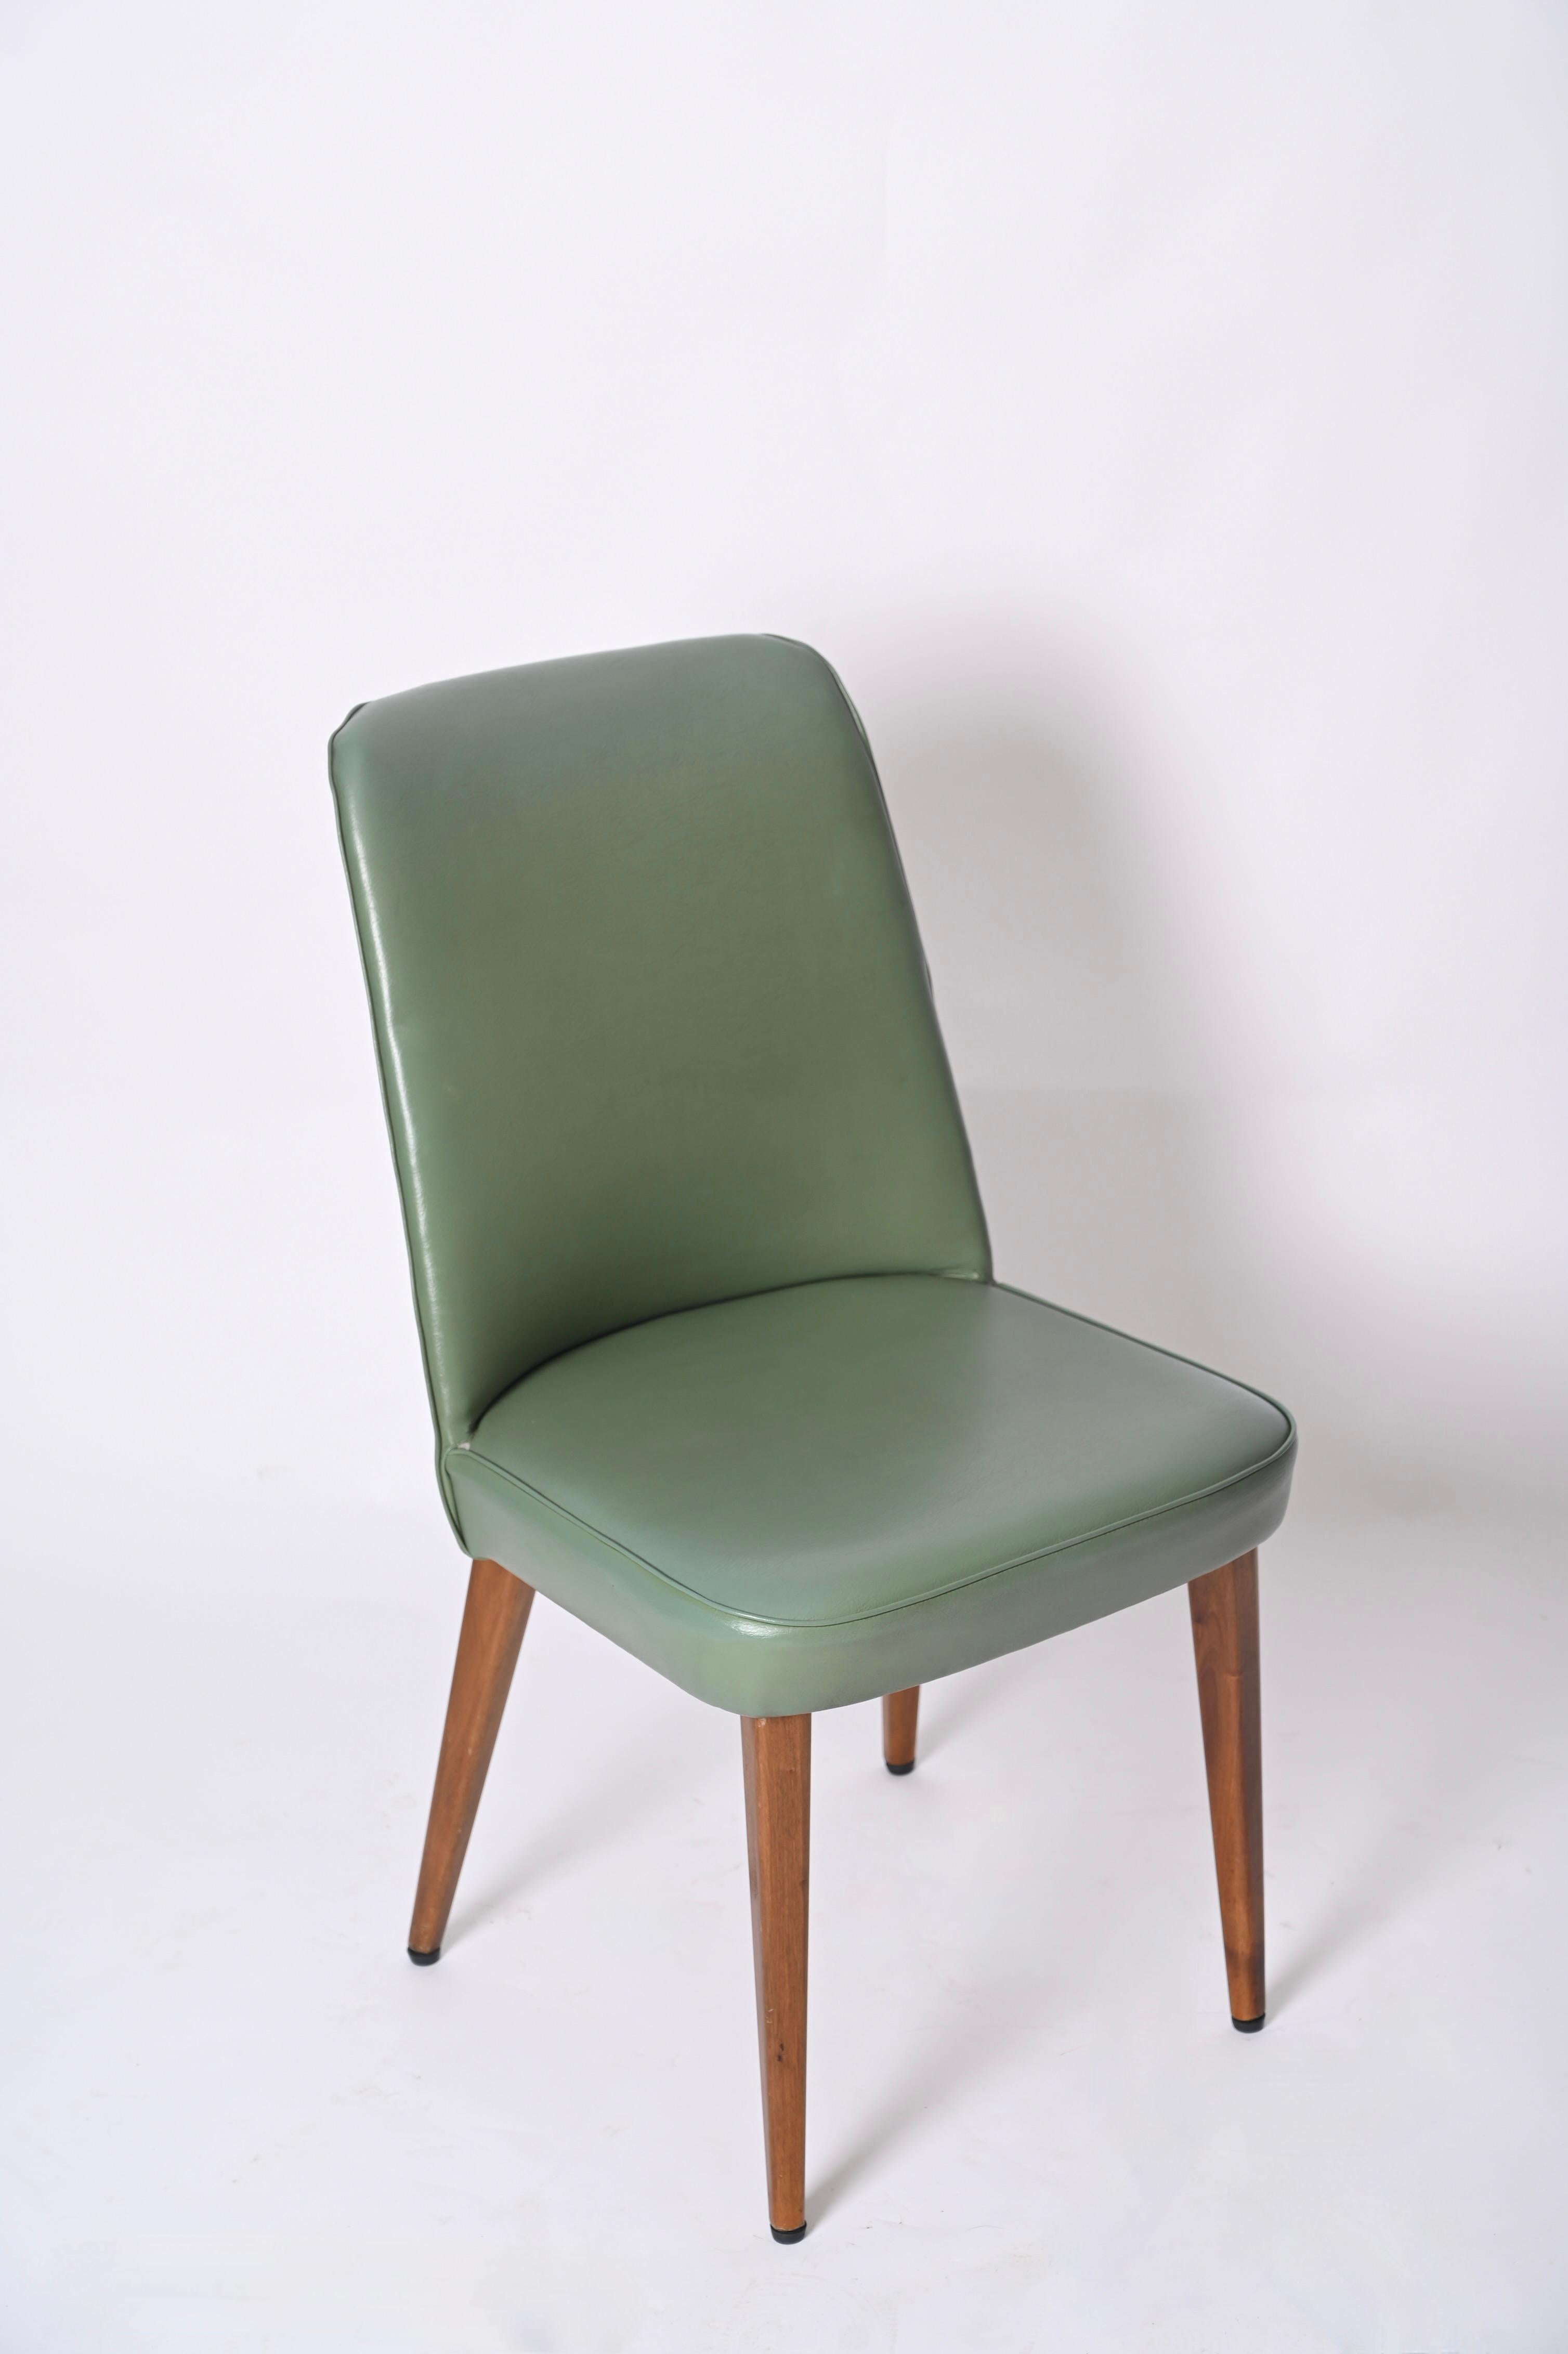 Superbe chaise en cuir vert ciel de Anonima Castelli Bologna Italie. Cette magnifique chaise a été fabriquée en Italie dans les années 50.

Rembourrée et recouverte du cuir vert d'origine, la chaise est dotée de quatre pieds en bois de hêtre qui se